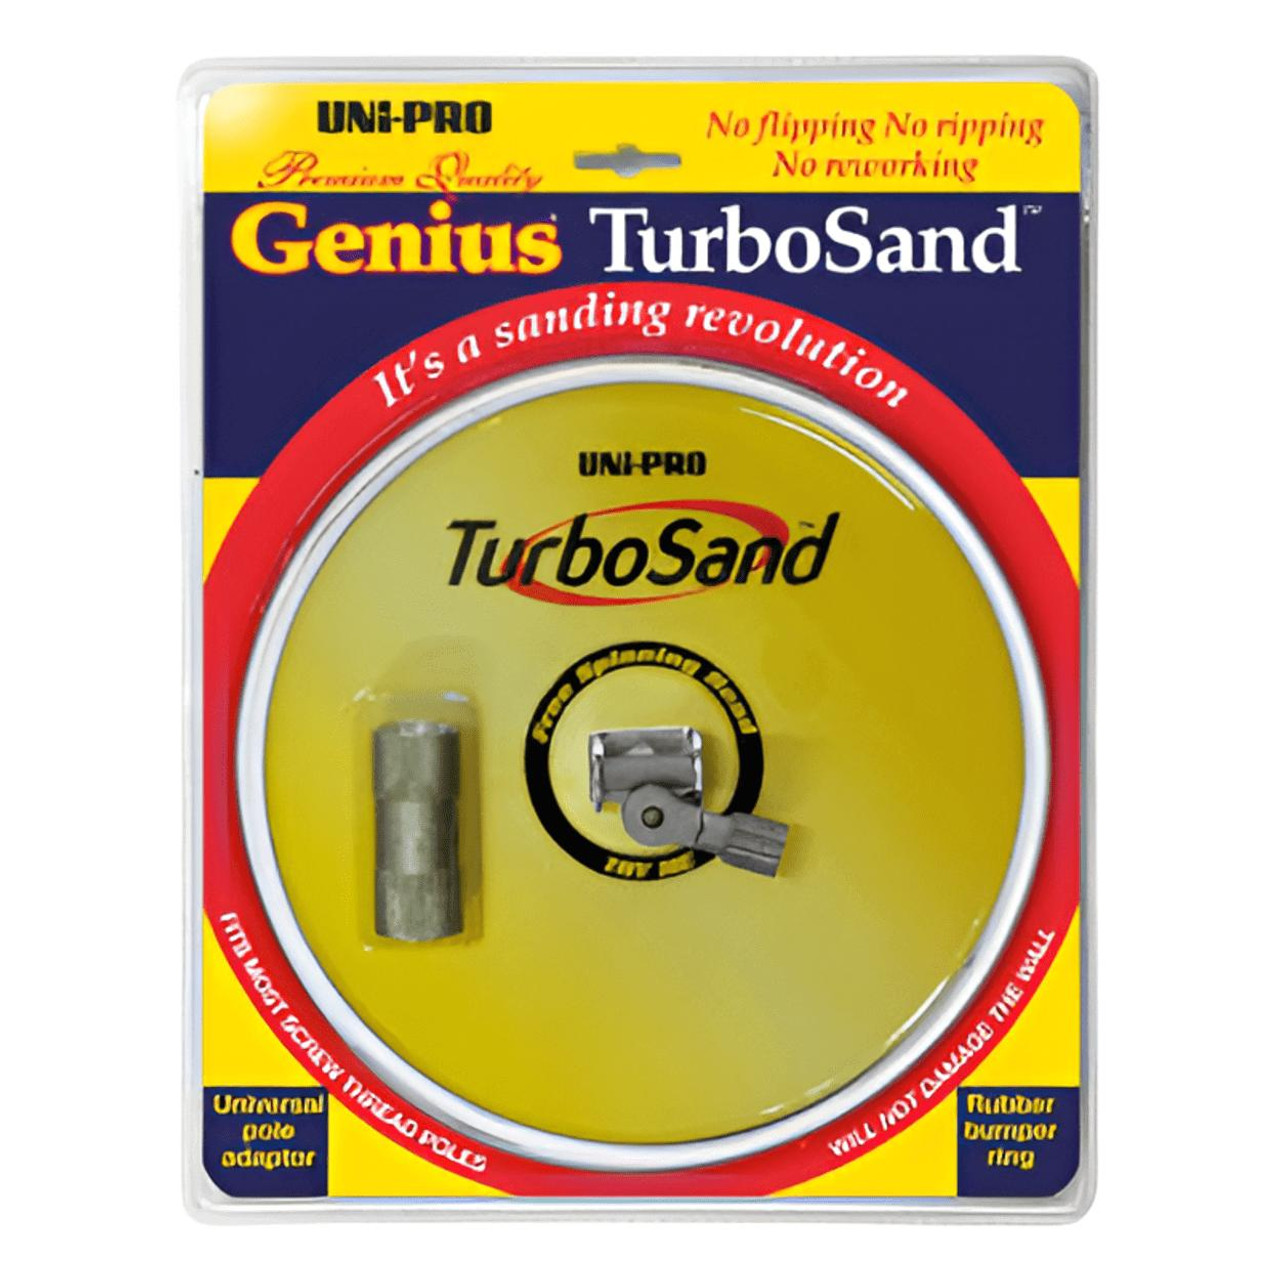 Uni-Pro UNI-PRO Genius TurboSand 230mm Orbital Sander 